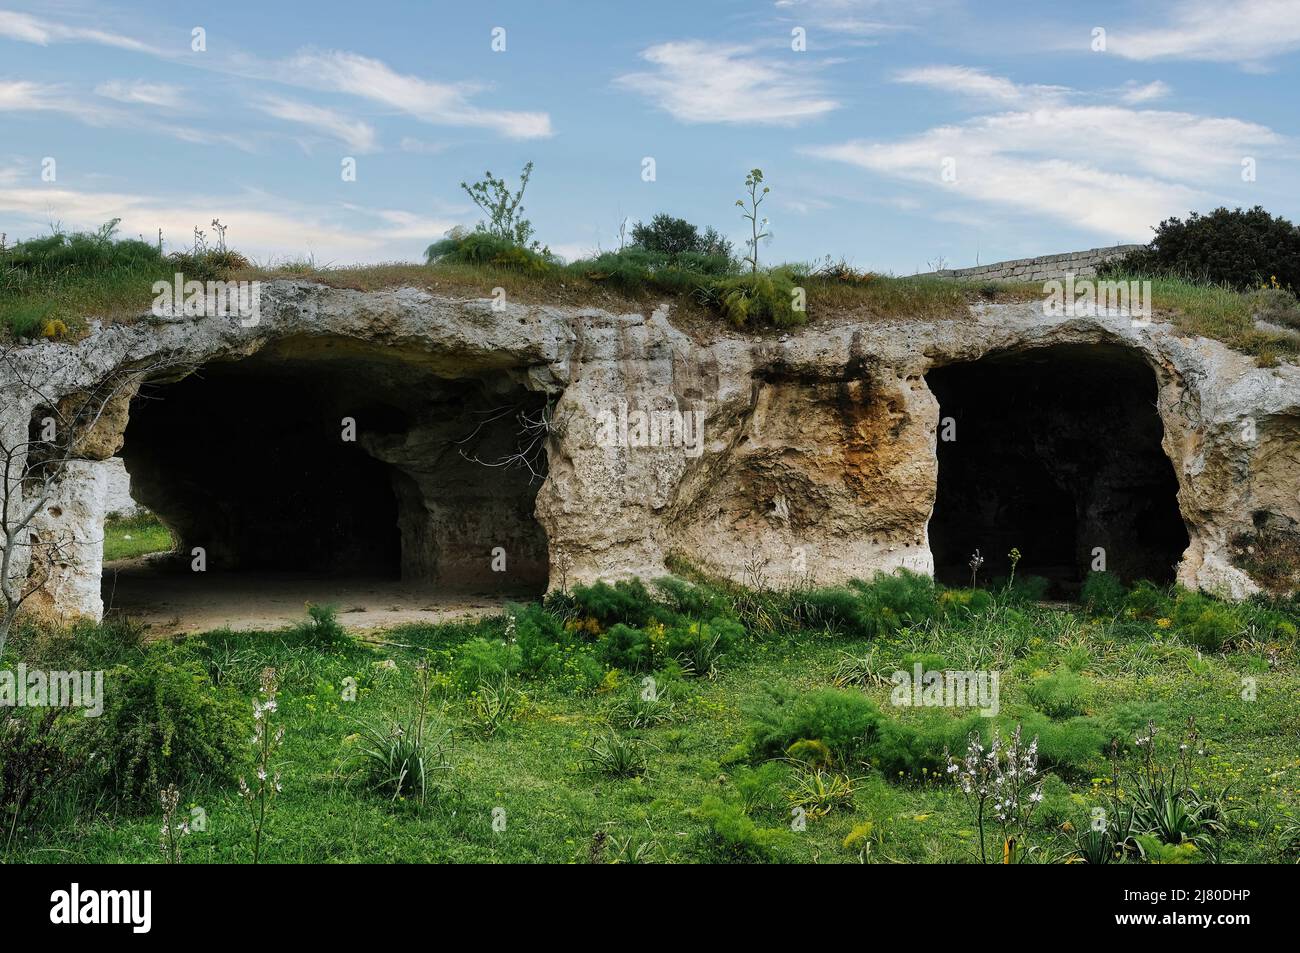 Grotte preistoriche nella Riserva della Murgia Materana (Matera) risalenti al Paleolitico e Neolitico Foto Stock